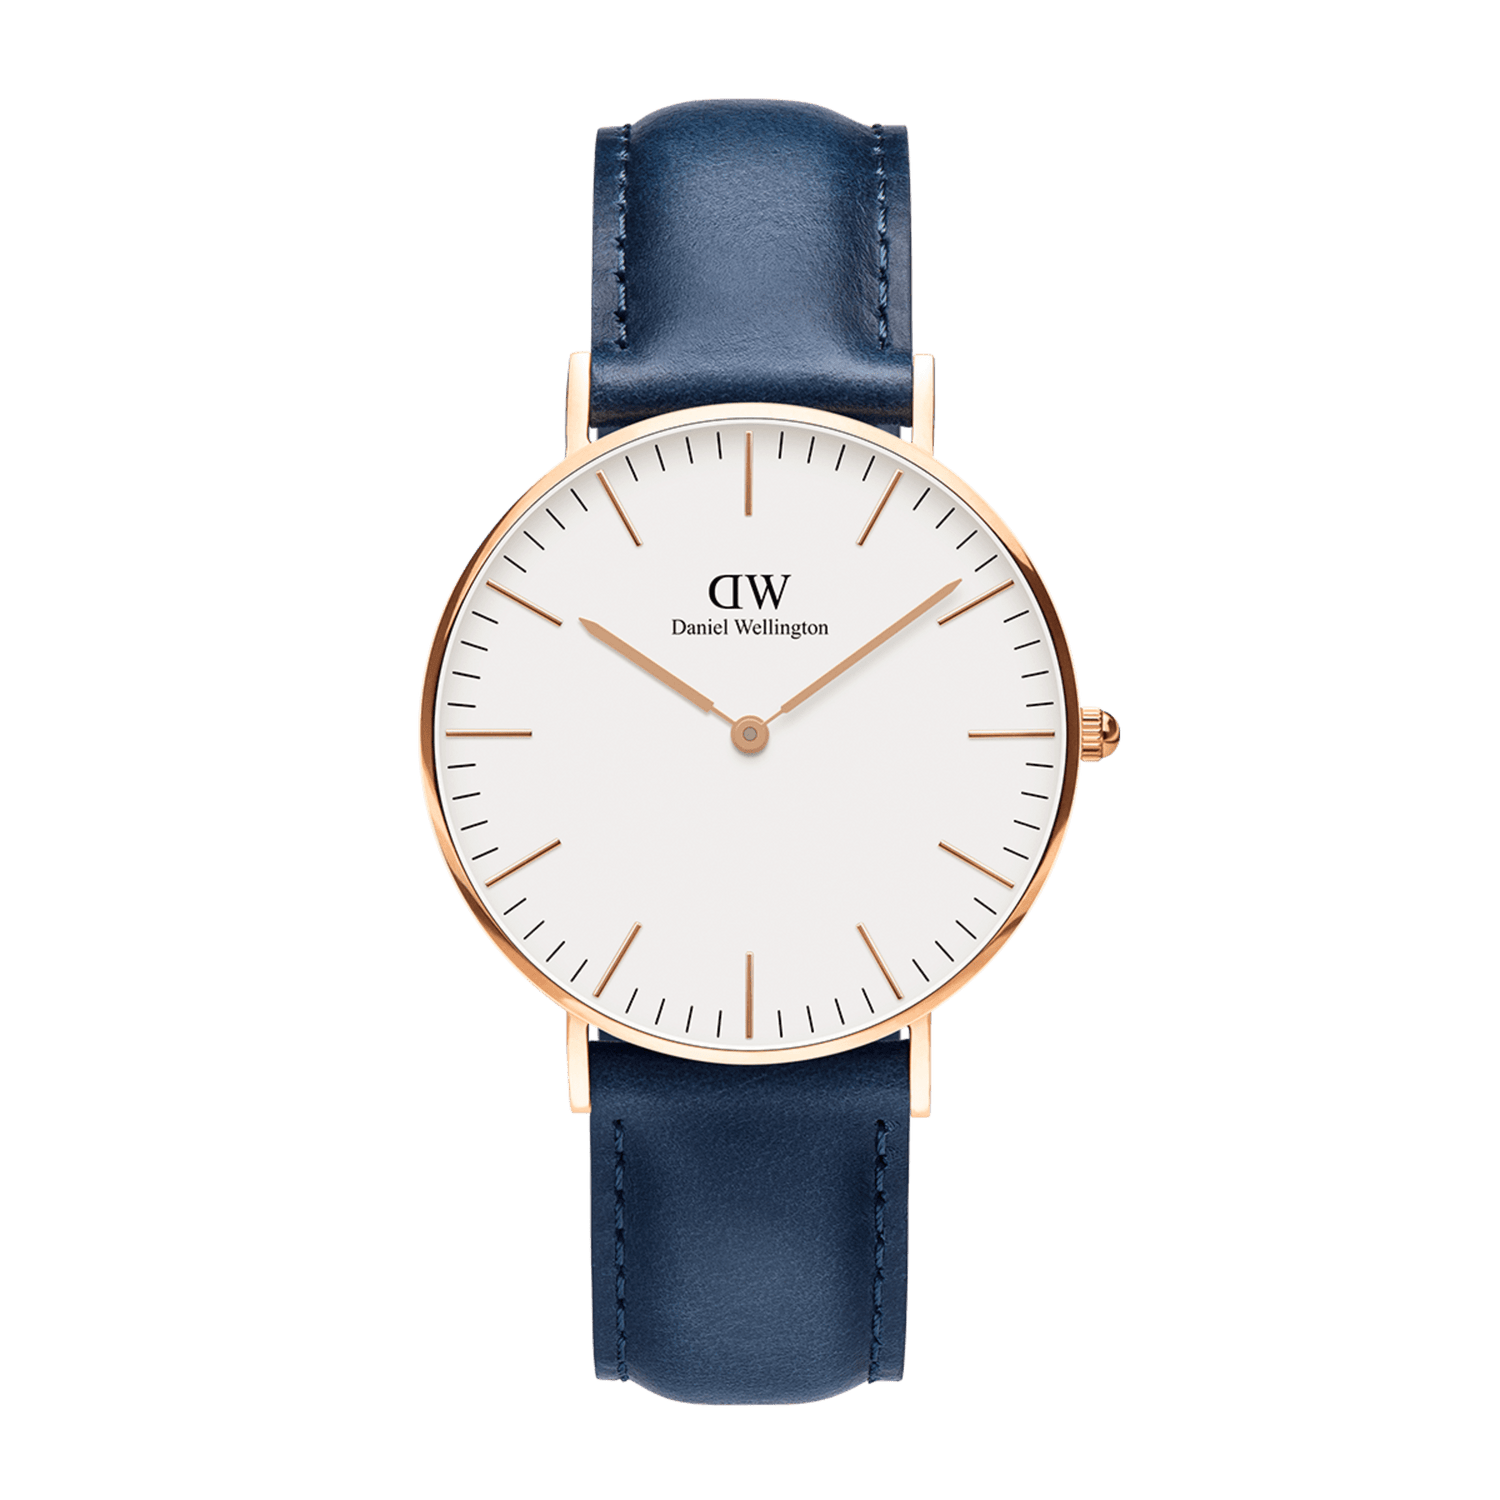 Regelen Distributie Nat Bayswater - Men's watch in silver & blue 40mm | DW – Daniel Wellington  Global